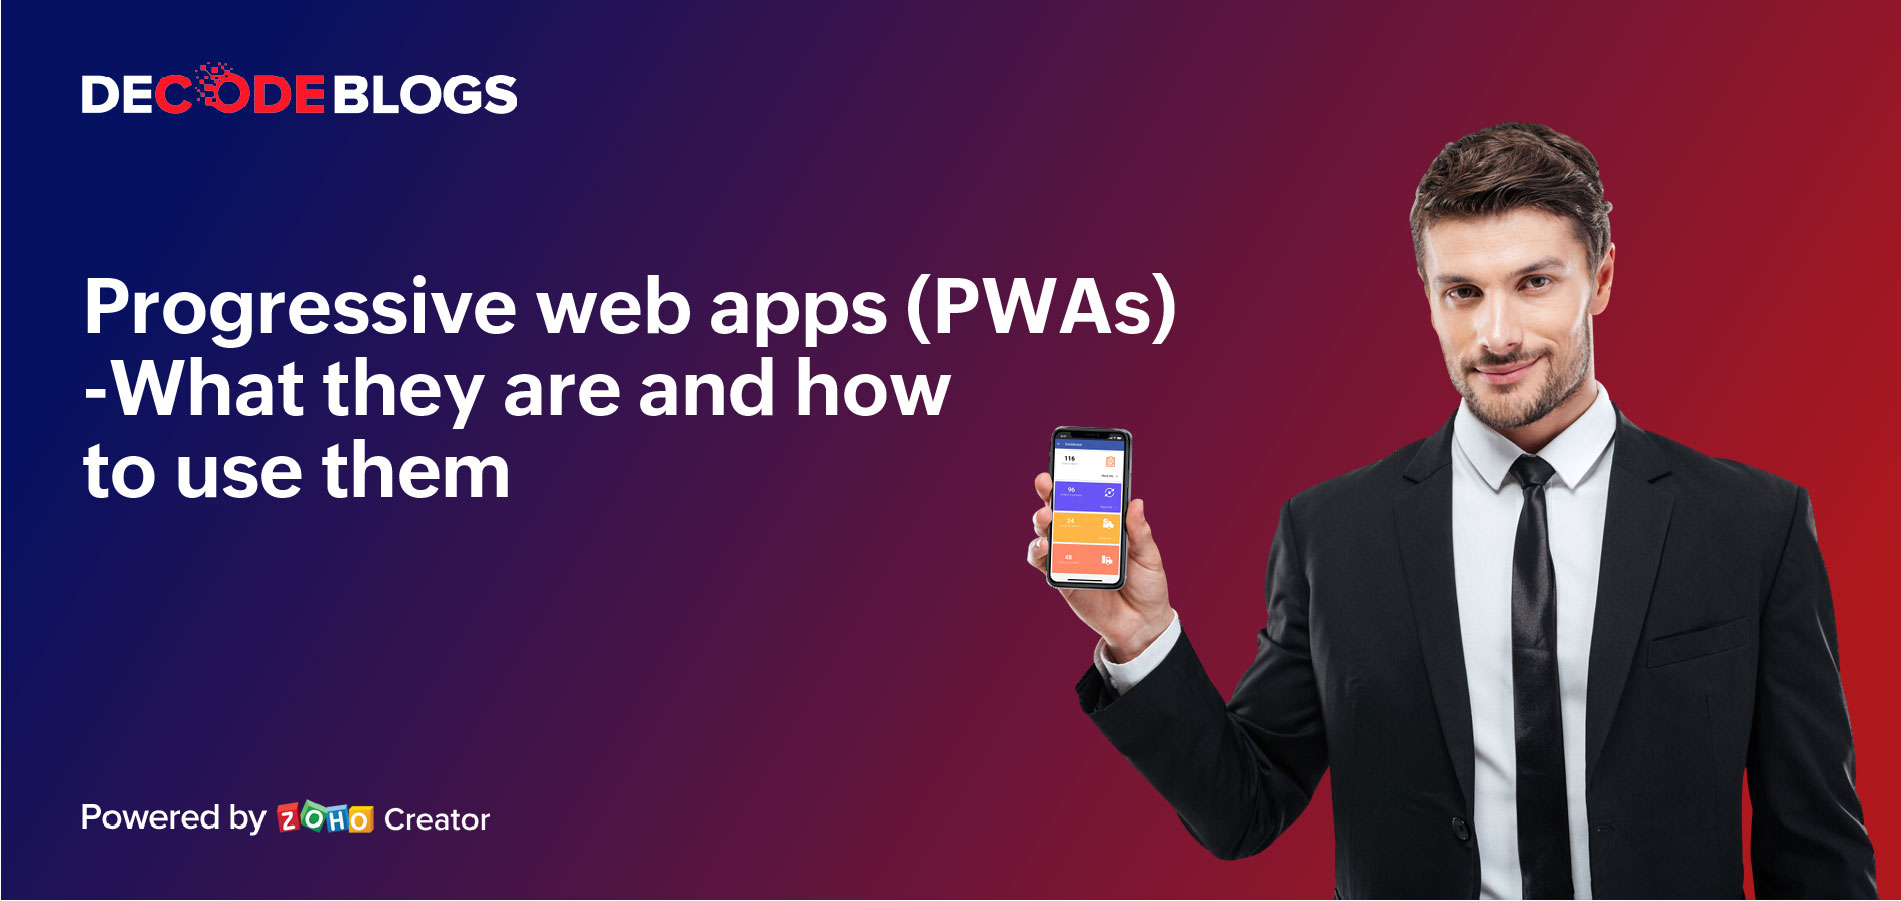 What are Progressive web apps (PWAs)